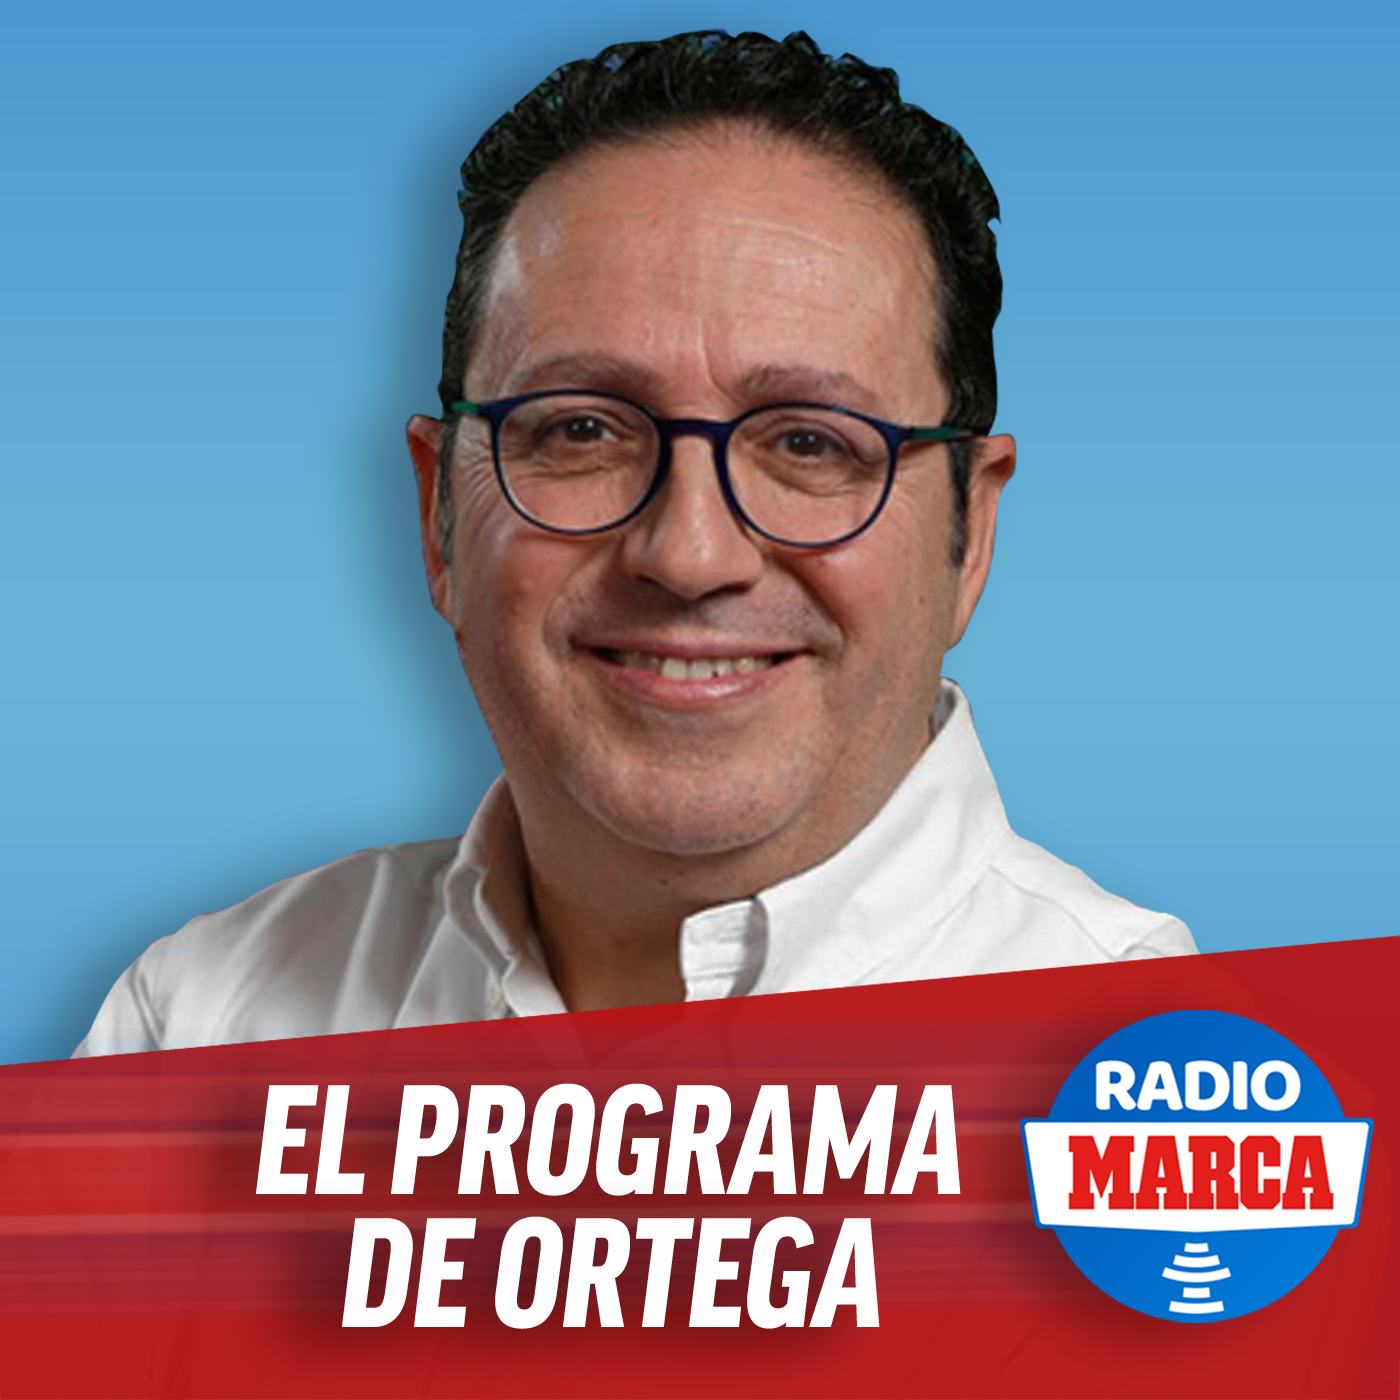 Entrevista a Iñigo Idiákez, exfutbolista de la Real Sociedad (08/11/21)